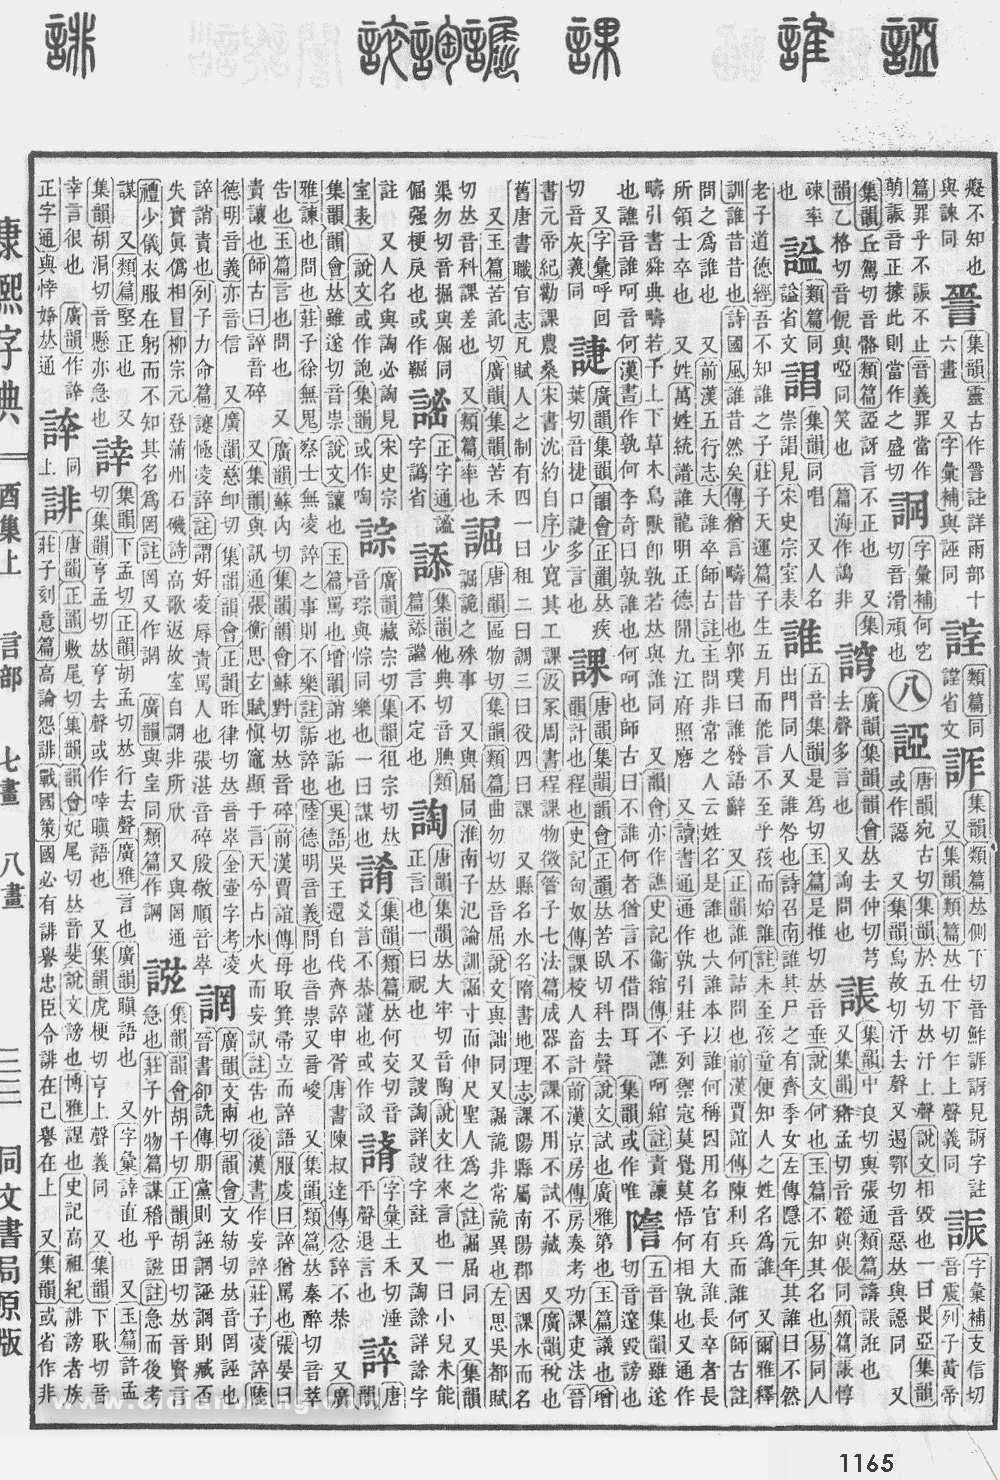 康熙字典掃描版第1165頁